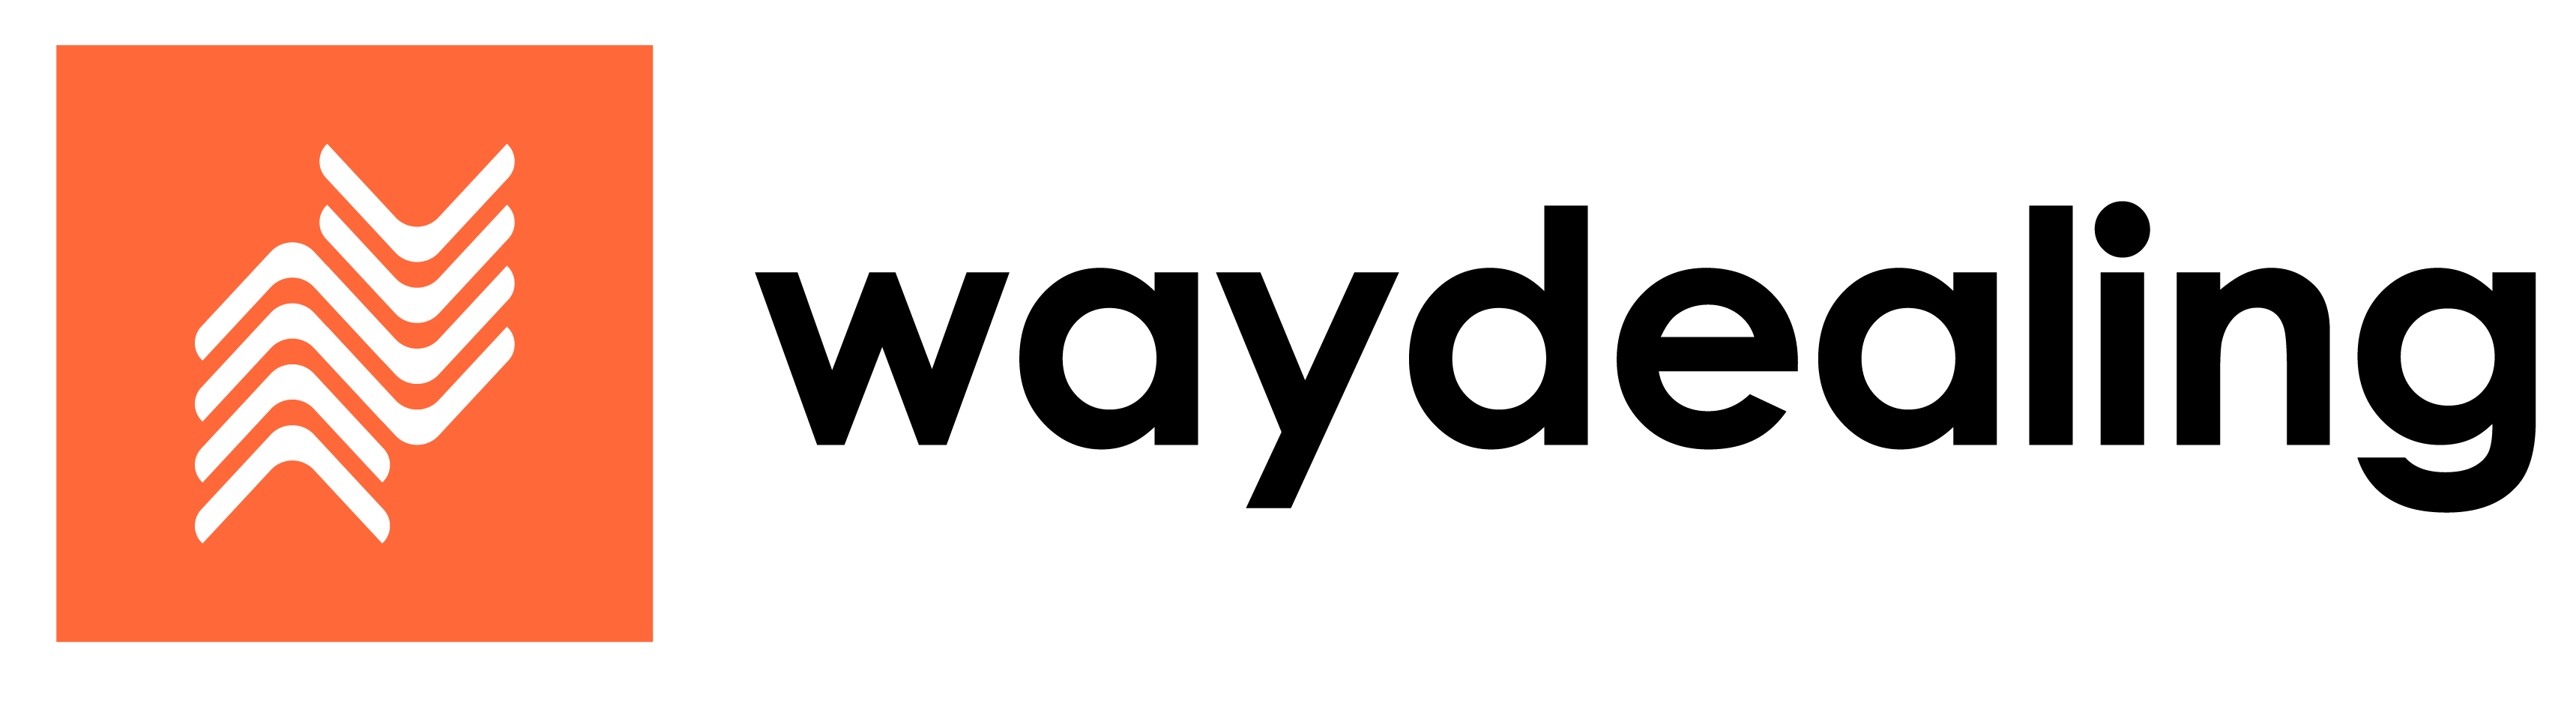 Logo Final File-01